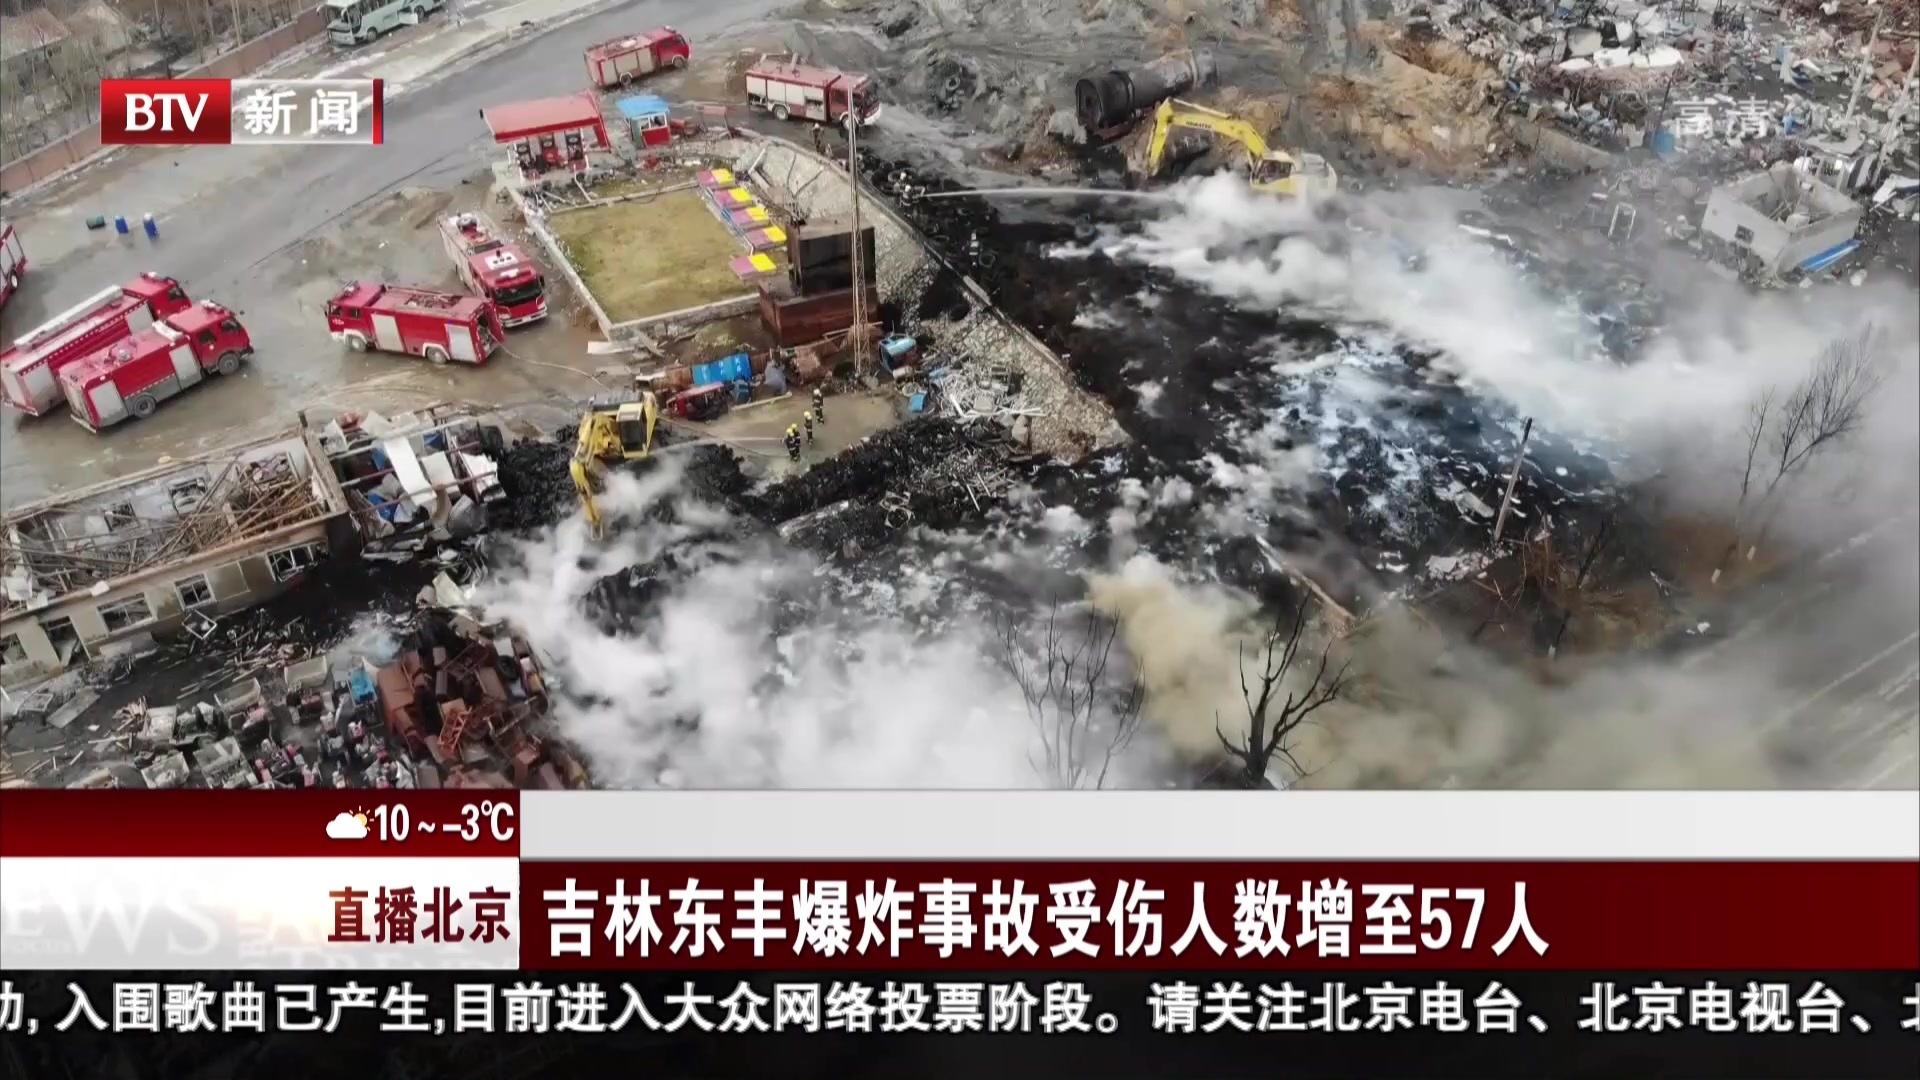 吉林东丰爆炸事故受伤人数增至57人